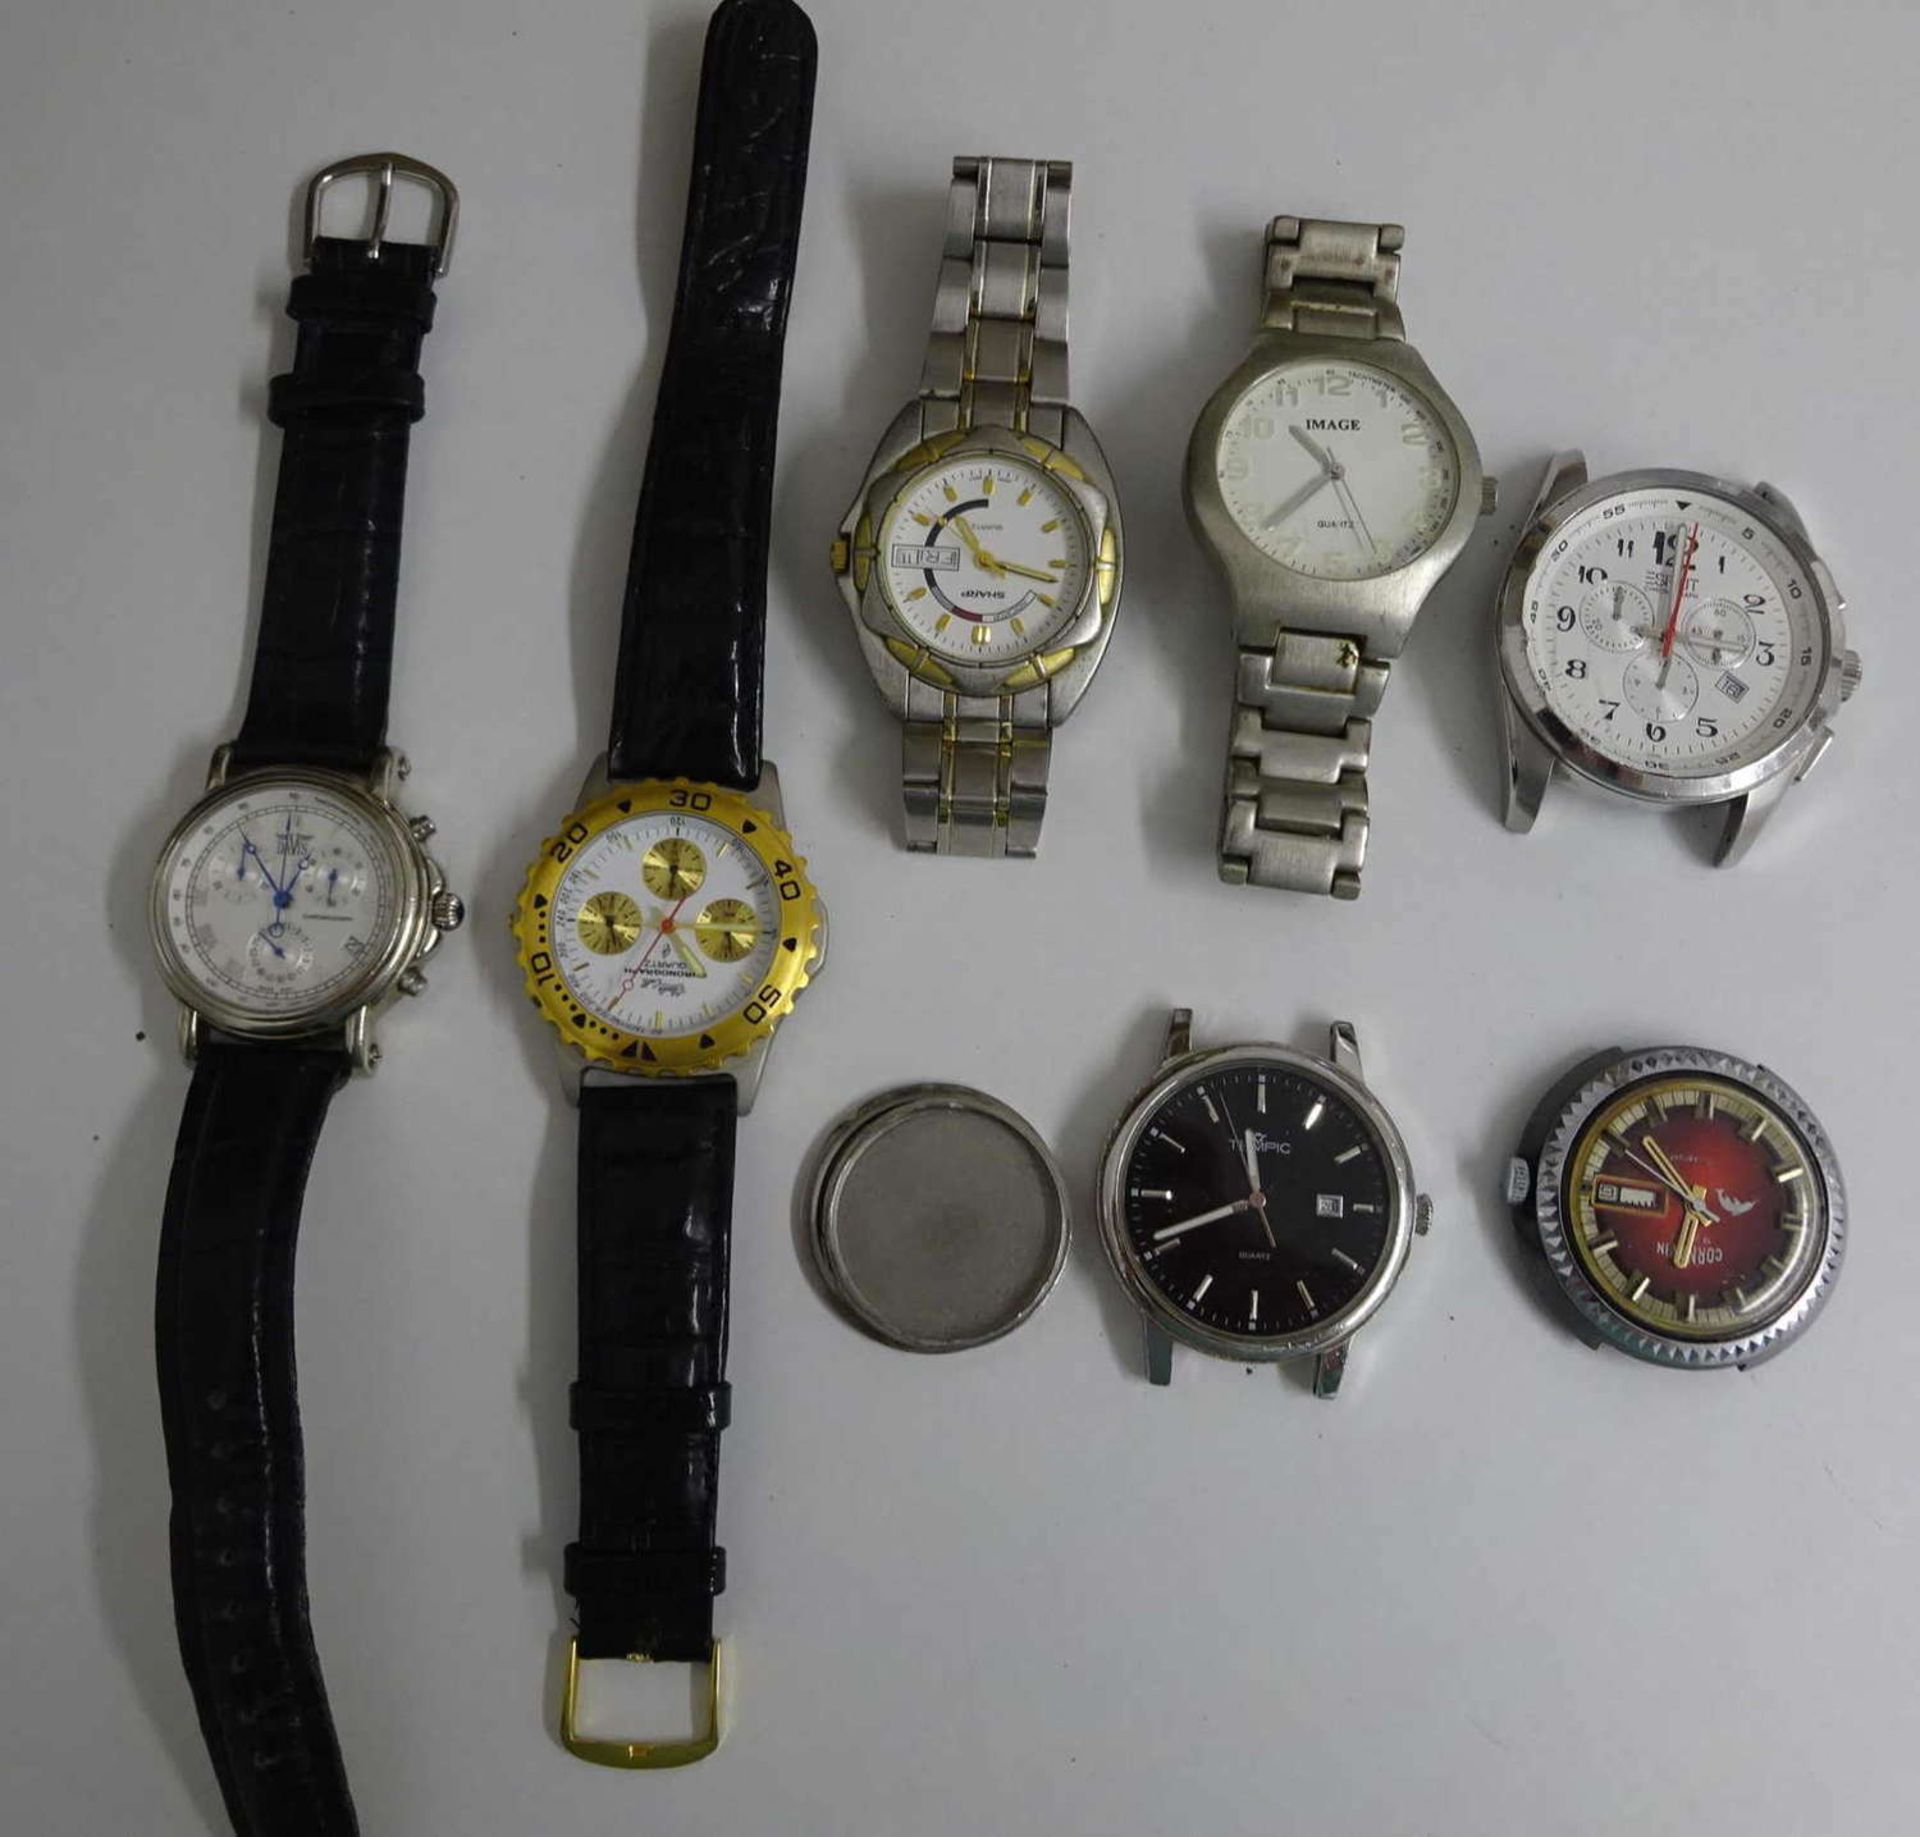 schönes Konvolut Herrenarmbanduhren, dabei Chronos, große Uhren, etc. Meist Quartz, aber auch